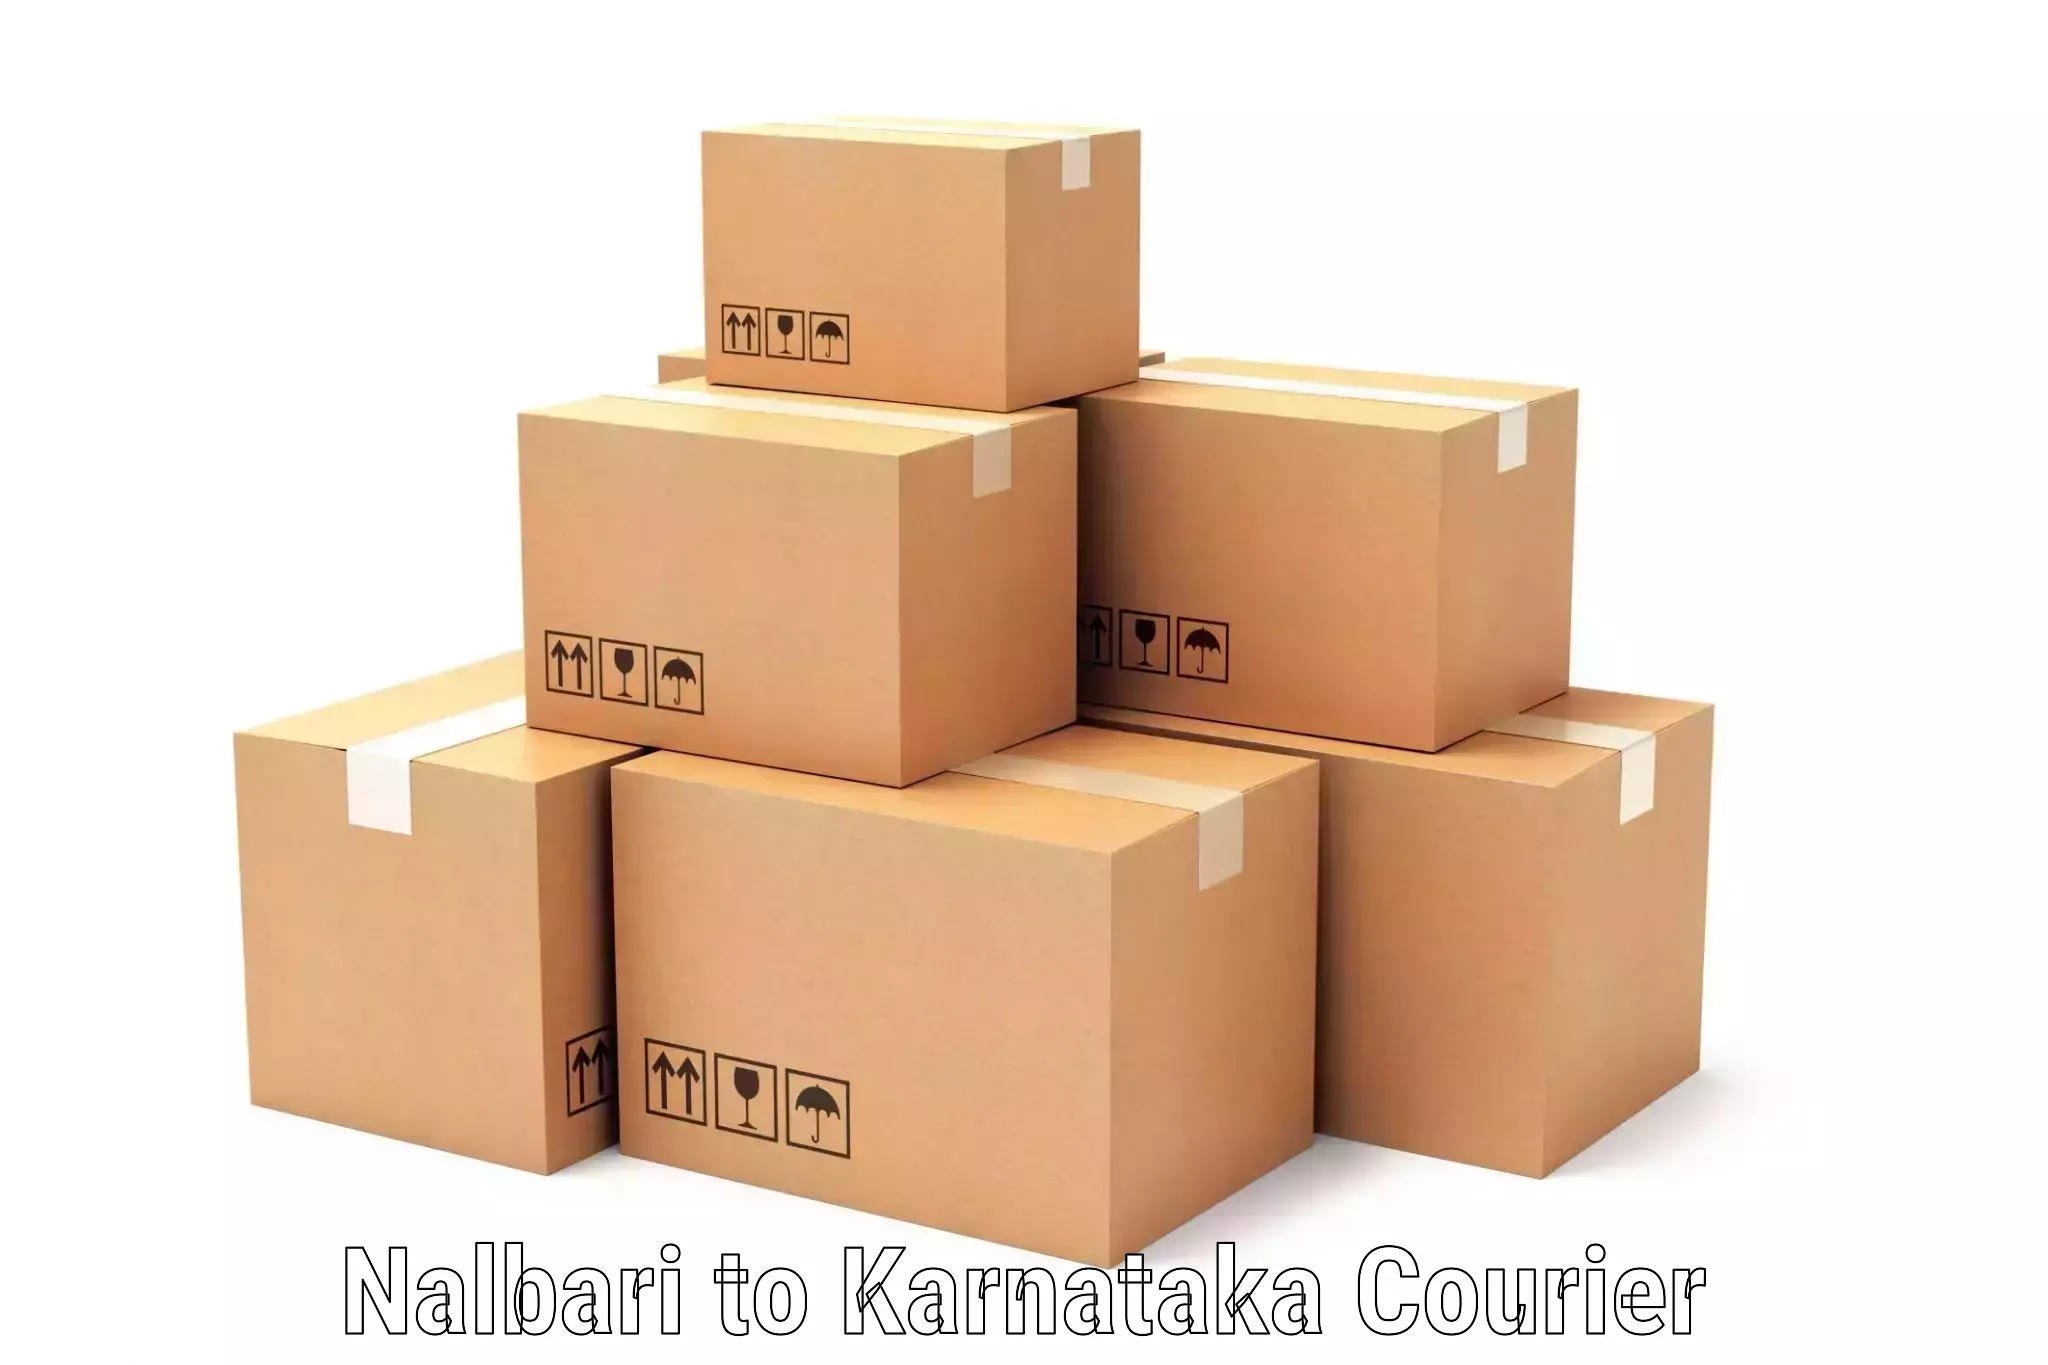 Global courier networks Nalbari to Thirthahalli